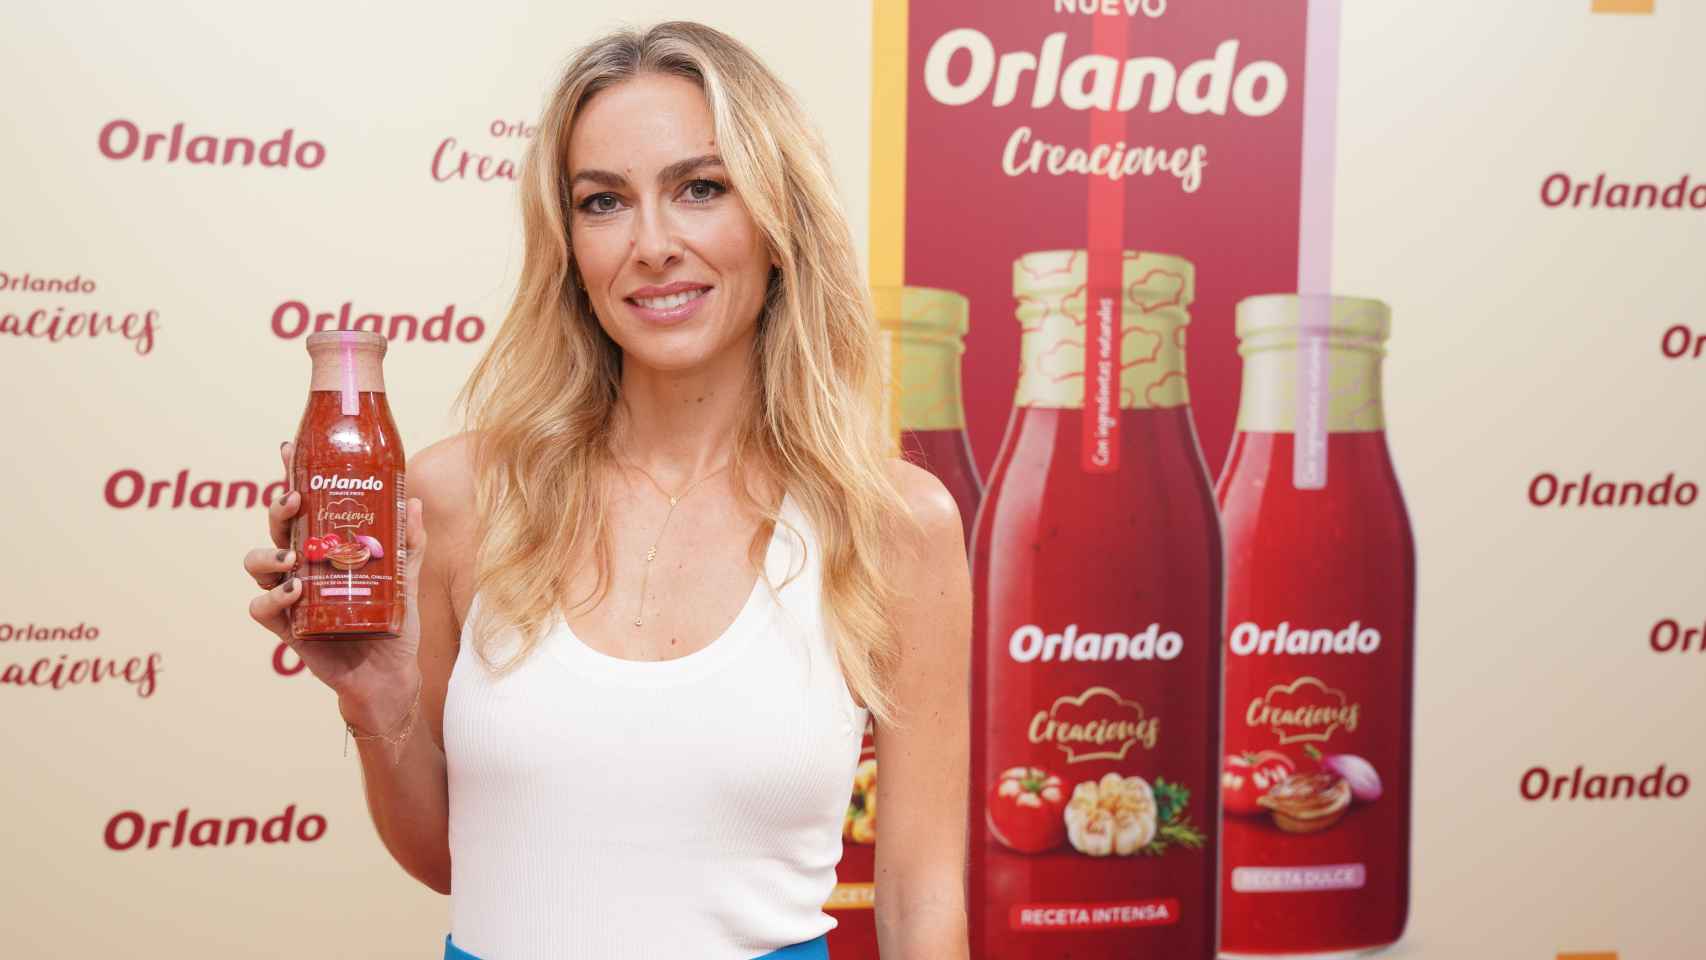 Kira Miró recomienda a los consumidores el tomate de Orlando 'Creaciones' por ser casero y sano.